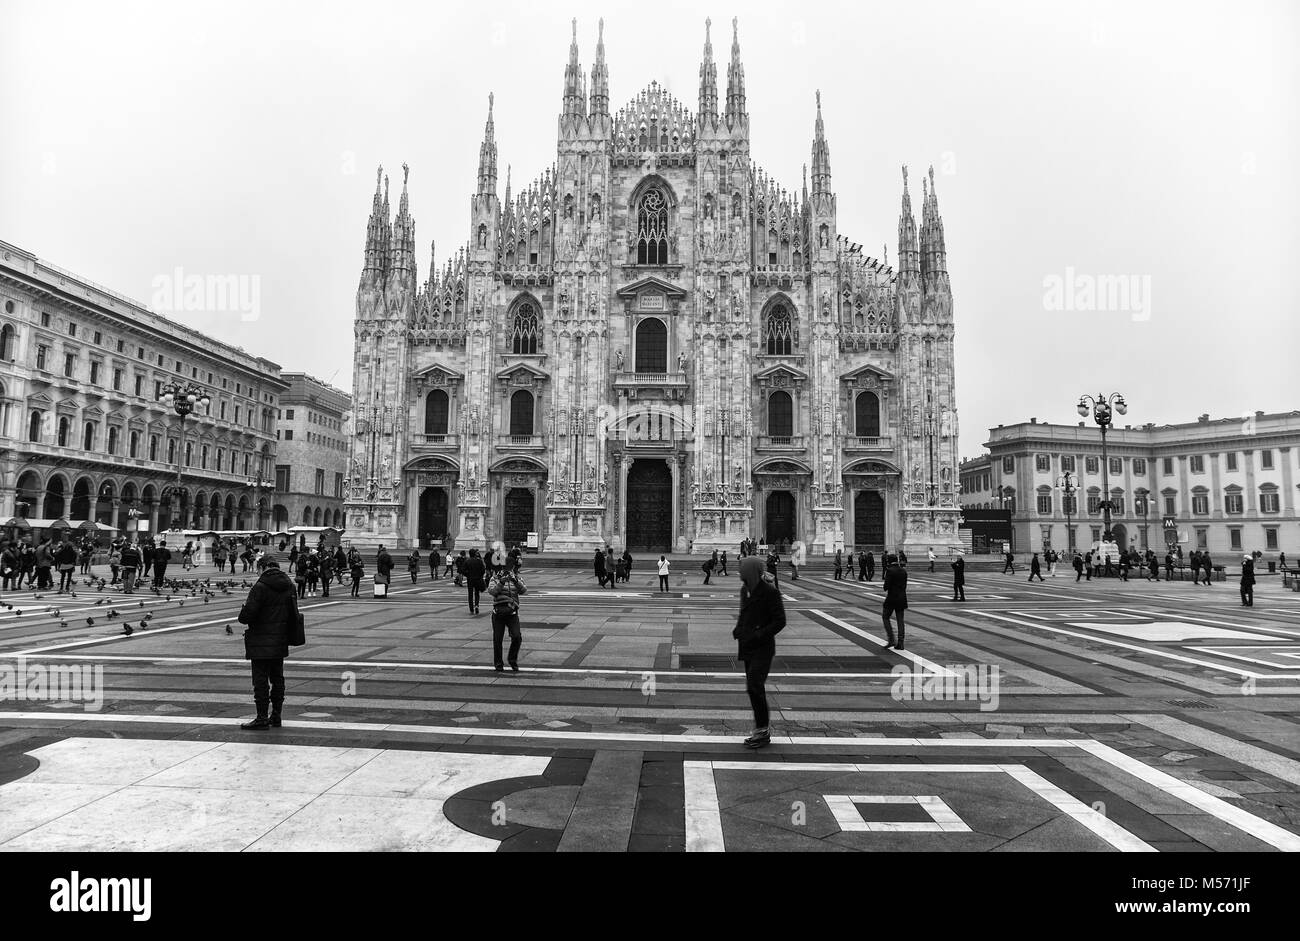 Mailänder Dom (Duomo di Milano) ist die gotische Kathedrale Kirche von Mailand, Italien. Am Morgen von dem Platz voller Menschen erschossen. Stockfoto